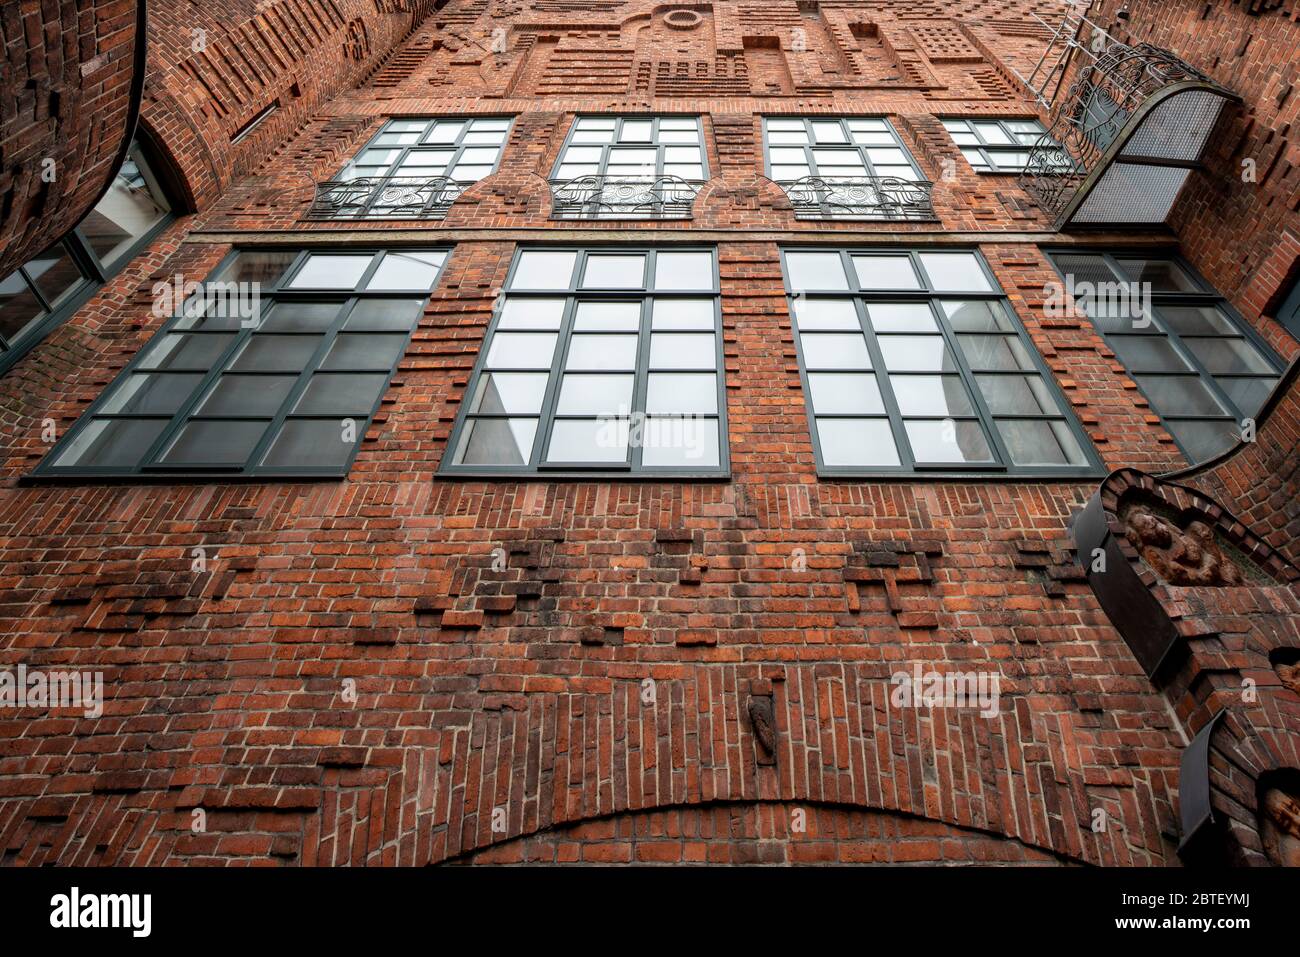 Bremen, Böttcherstraße, Handwerkerhof von Hoetger, Paula-Moderson-Becker-Museum Stock Photo